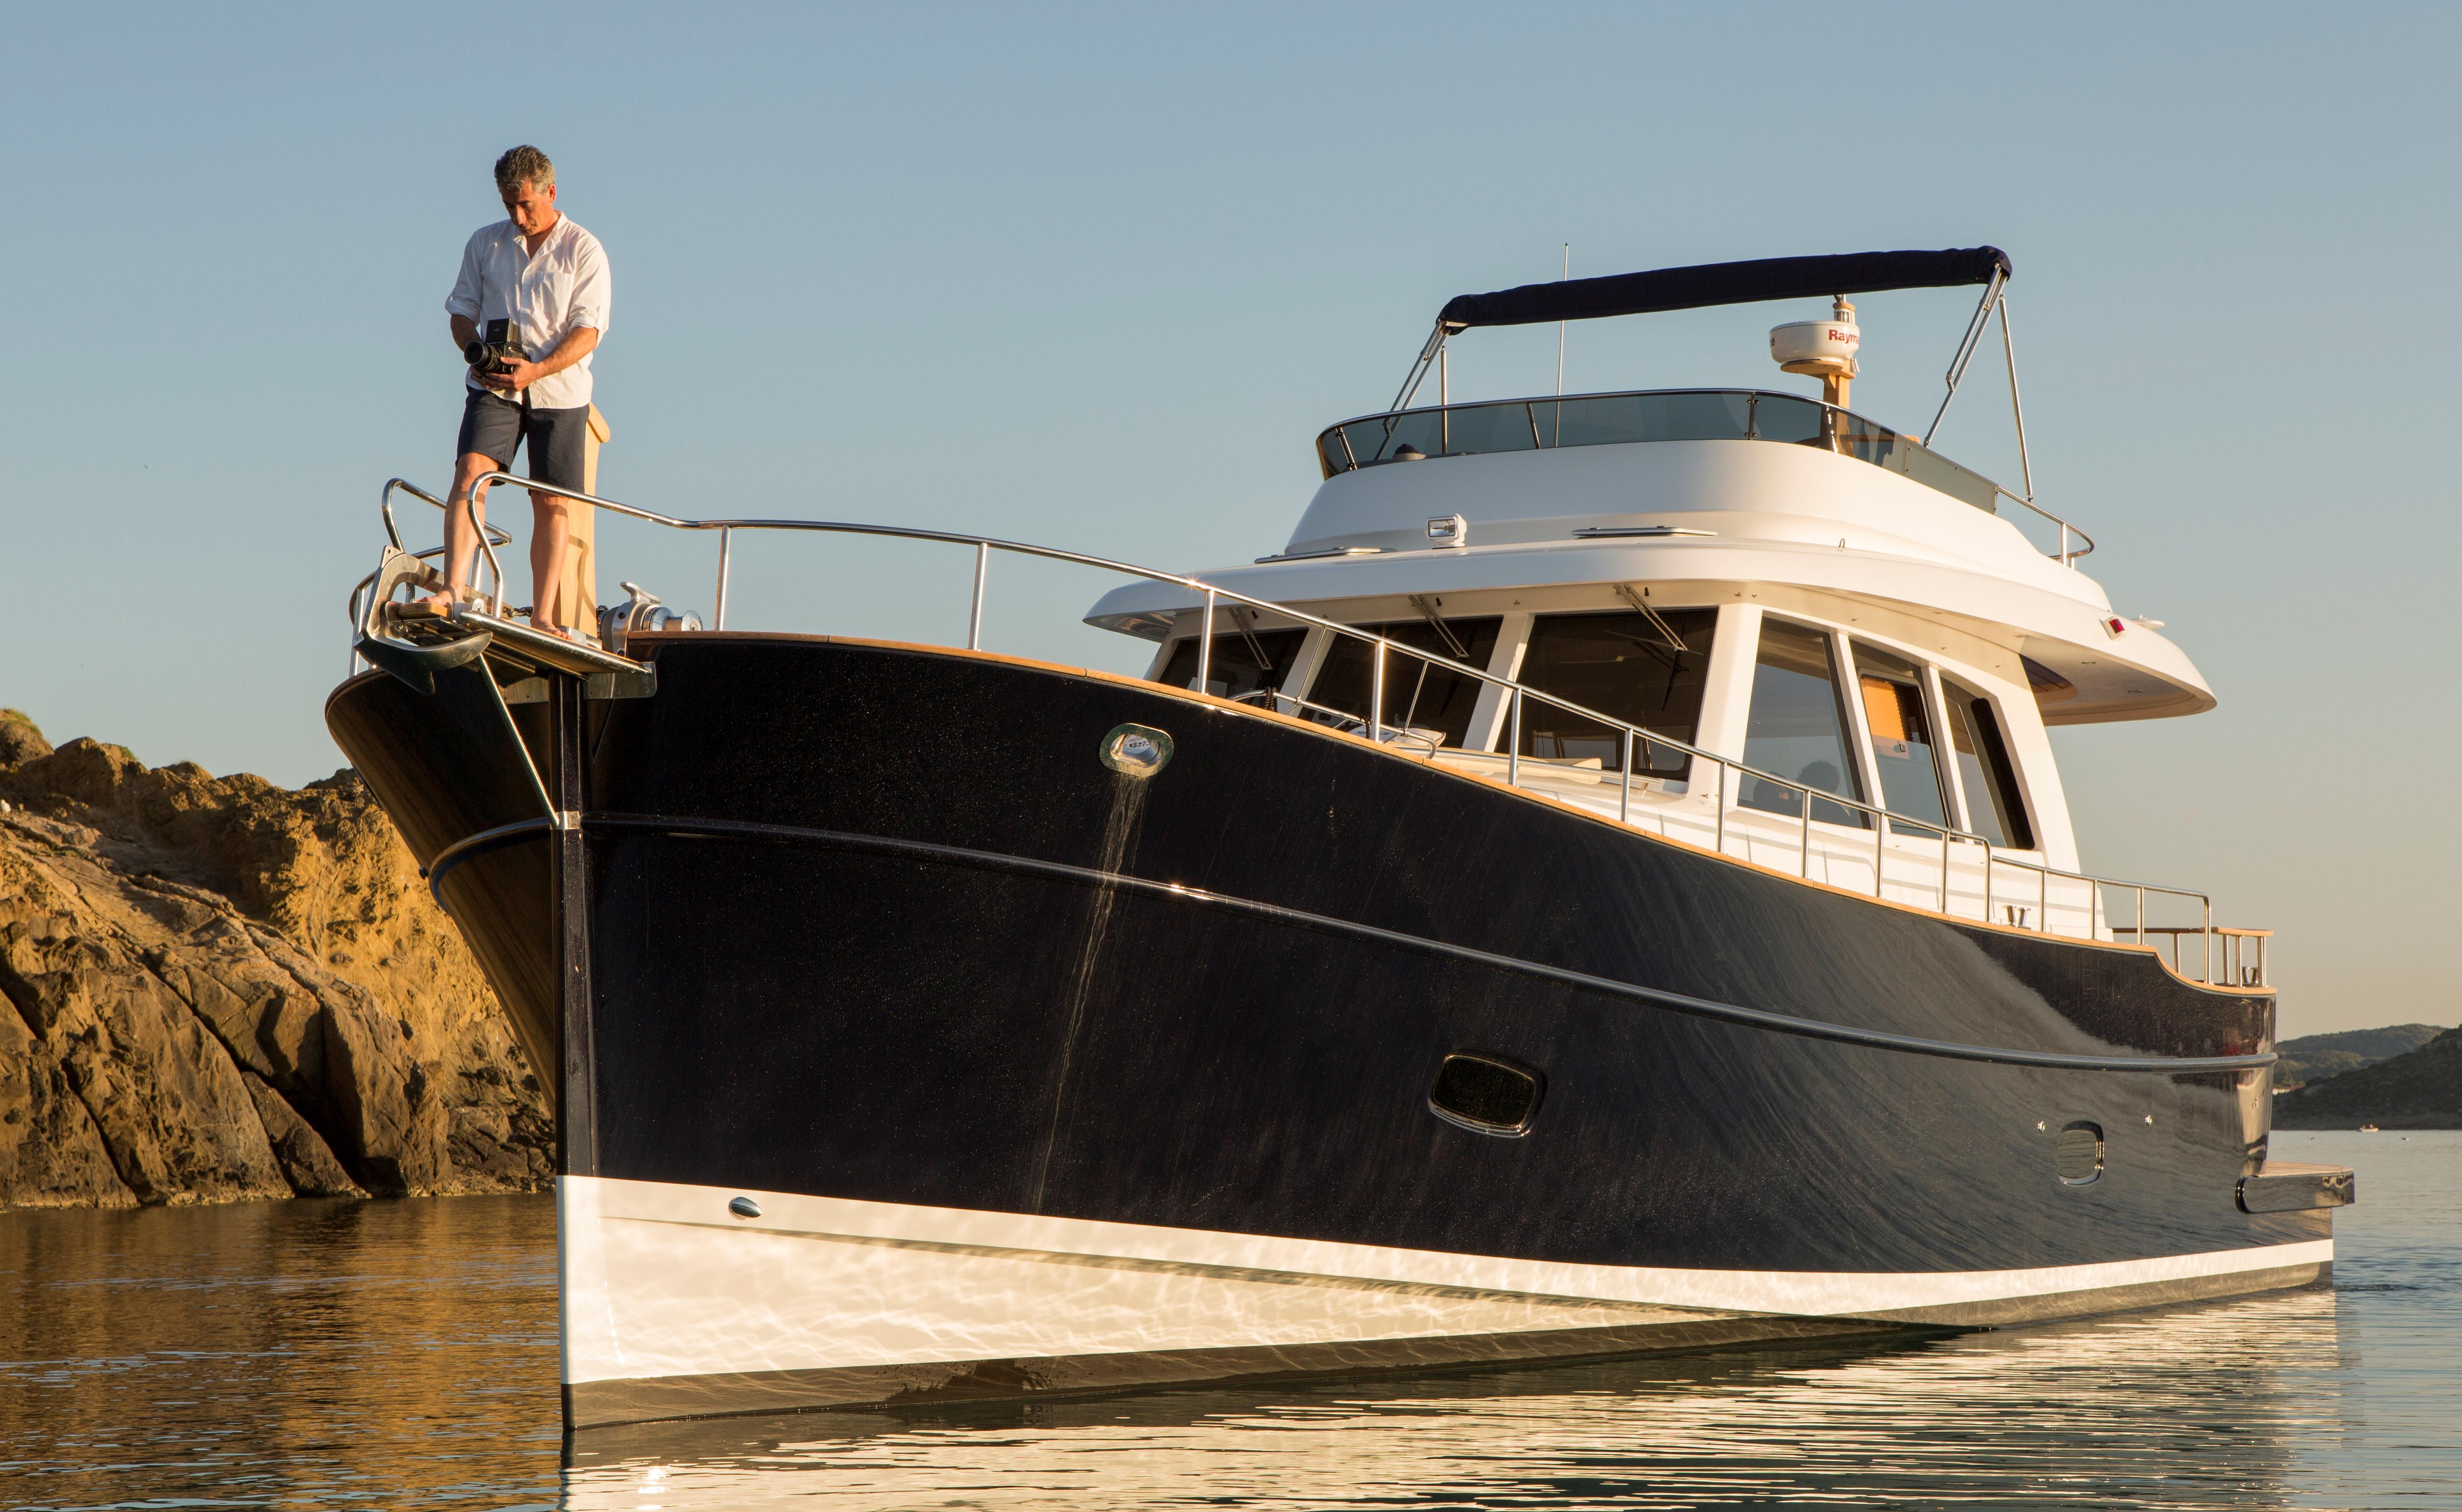 sasga yachts review